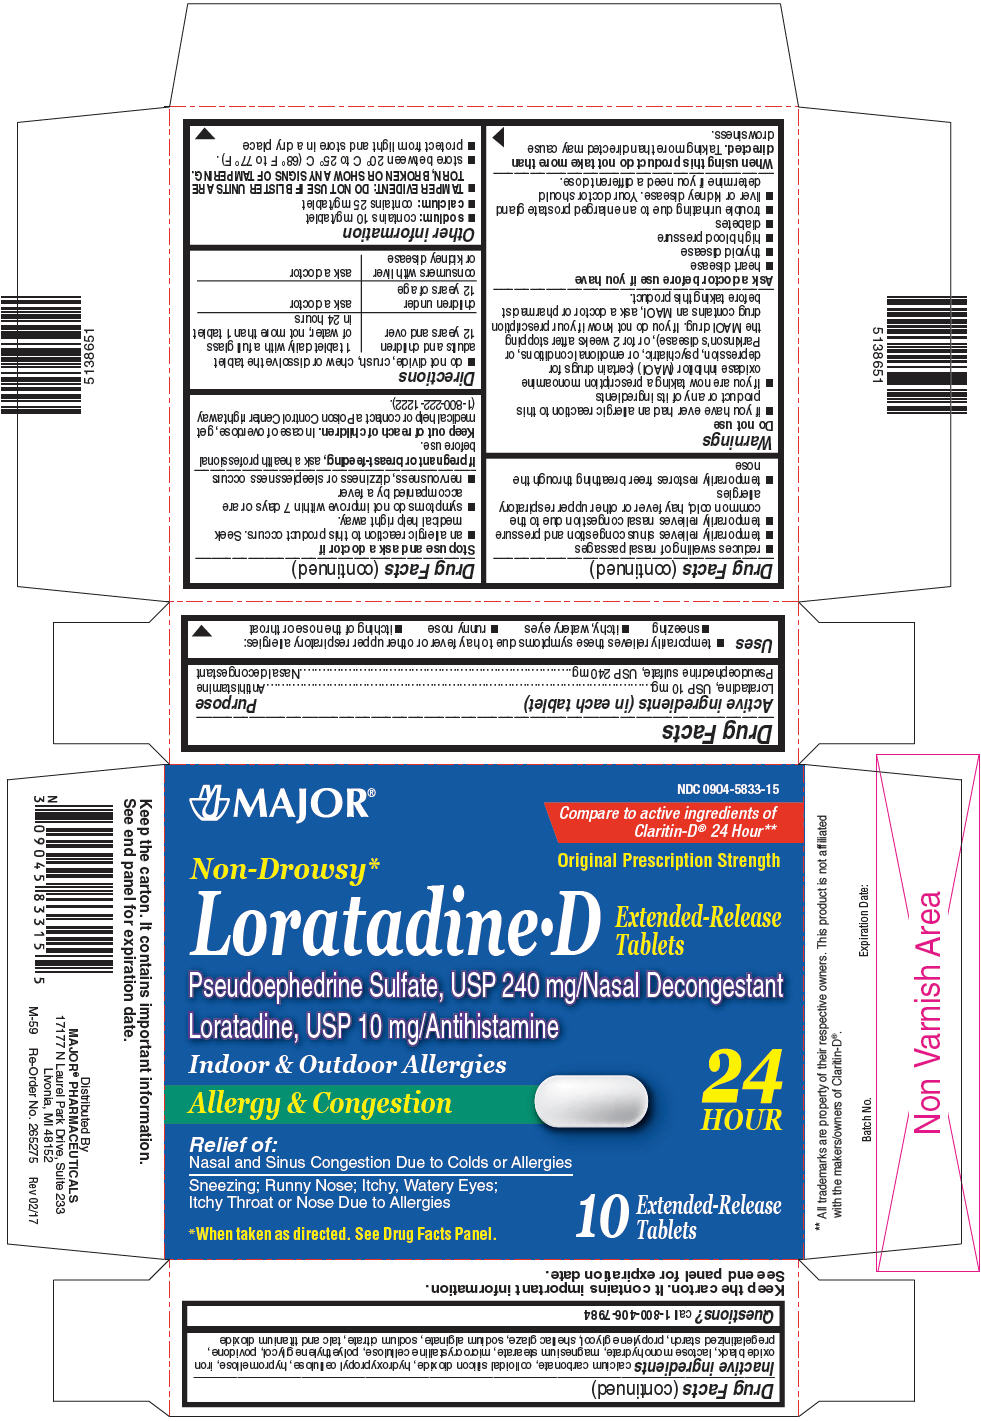 PRINCIPAL DISPLAY PANEL - 240 mg/10 mg Tablet Blister Pack Carton